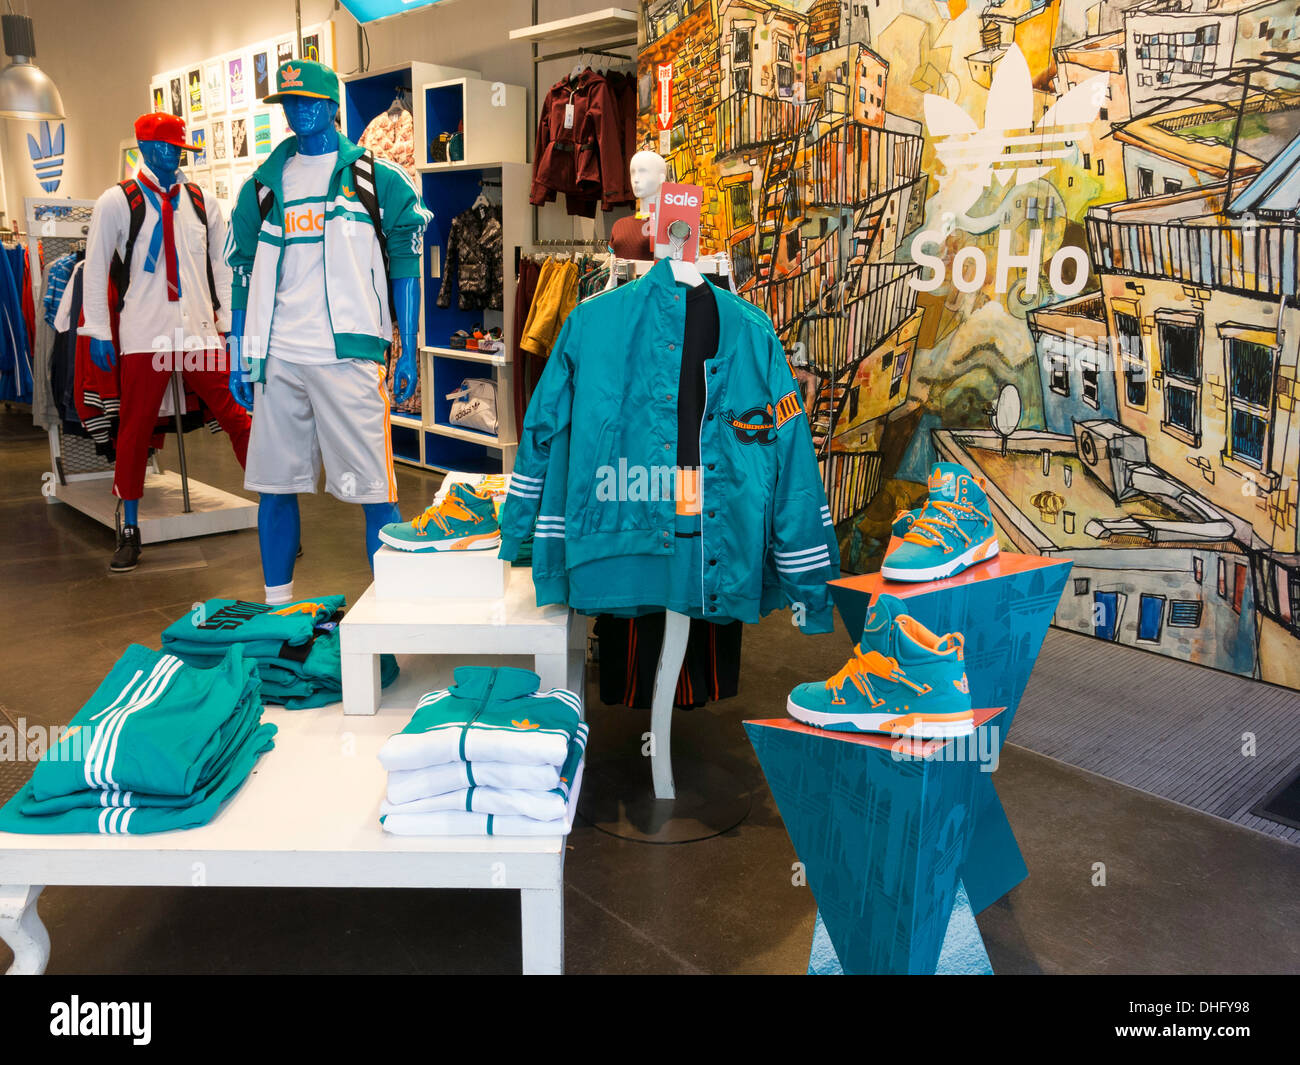 Vêtements de sport Adidas Store, Affichage, SoHo, NYC, USA Banque D'Images